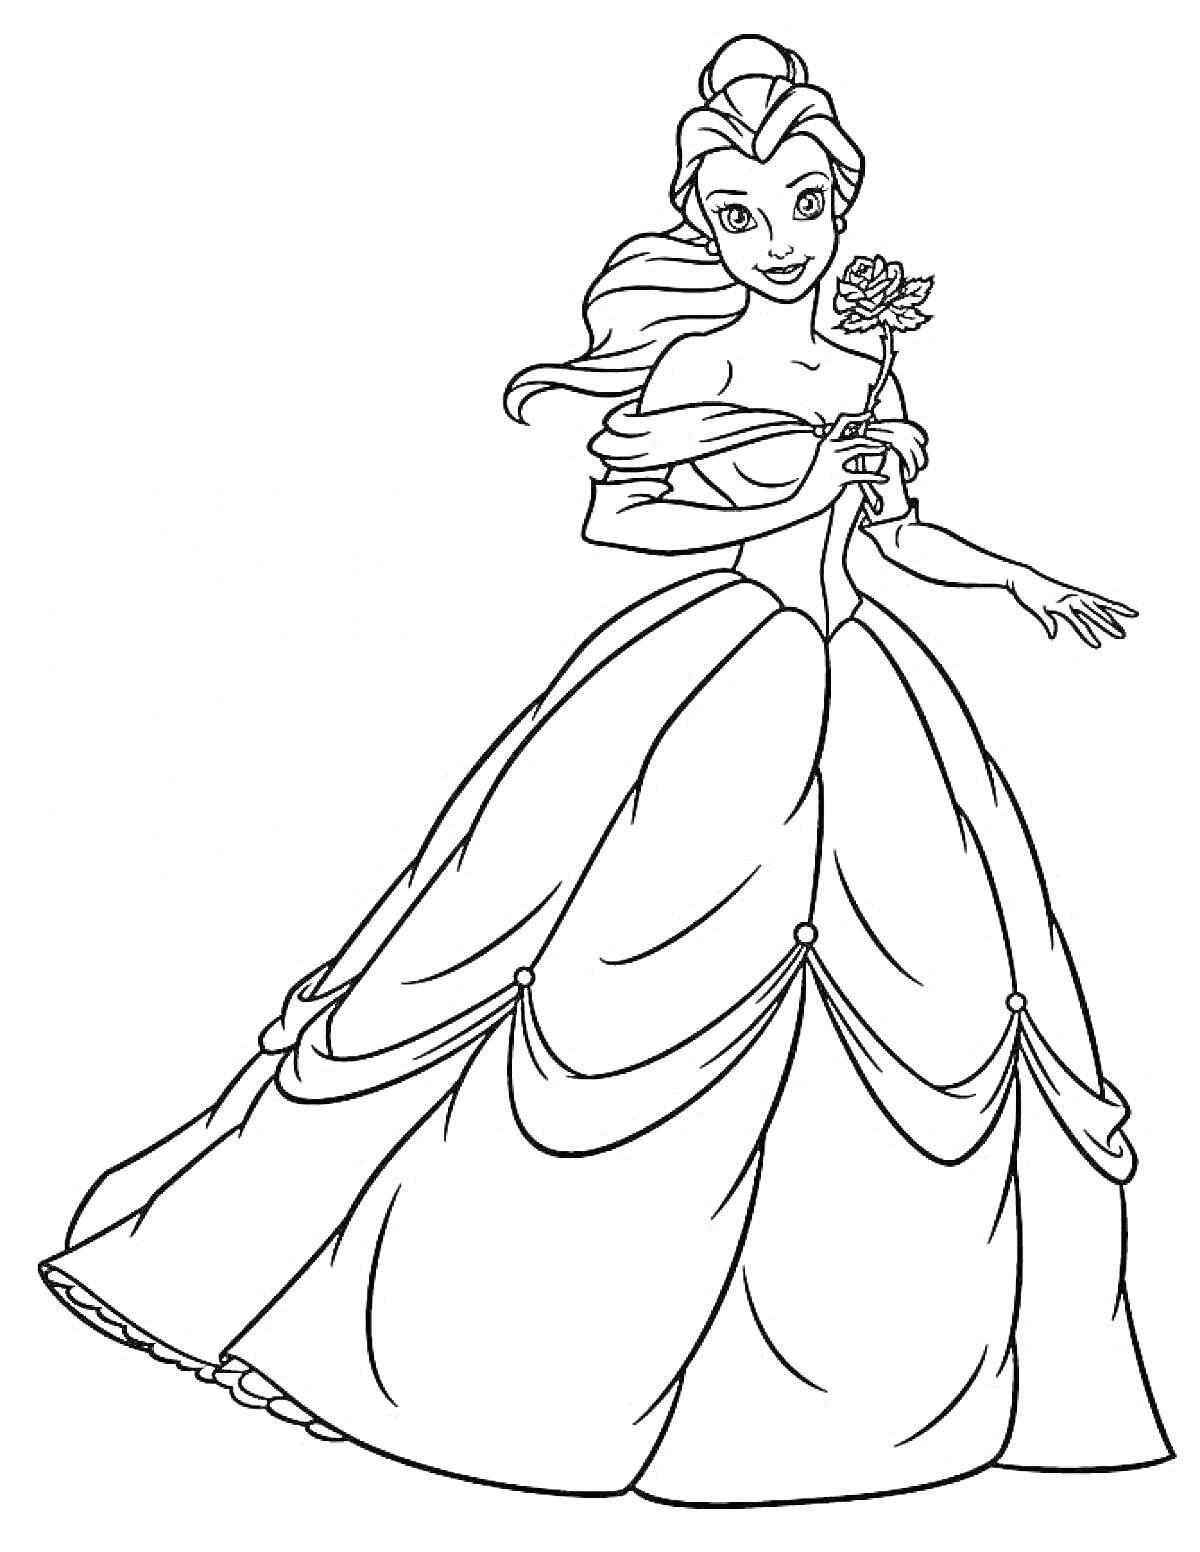 Принцесса Бель с розой в руке в пышном платье